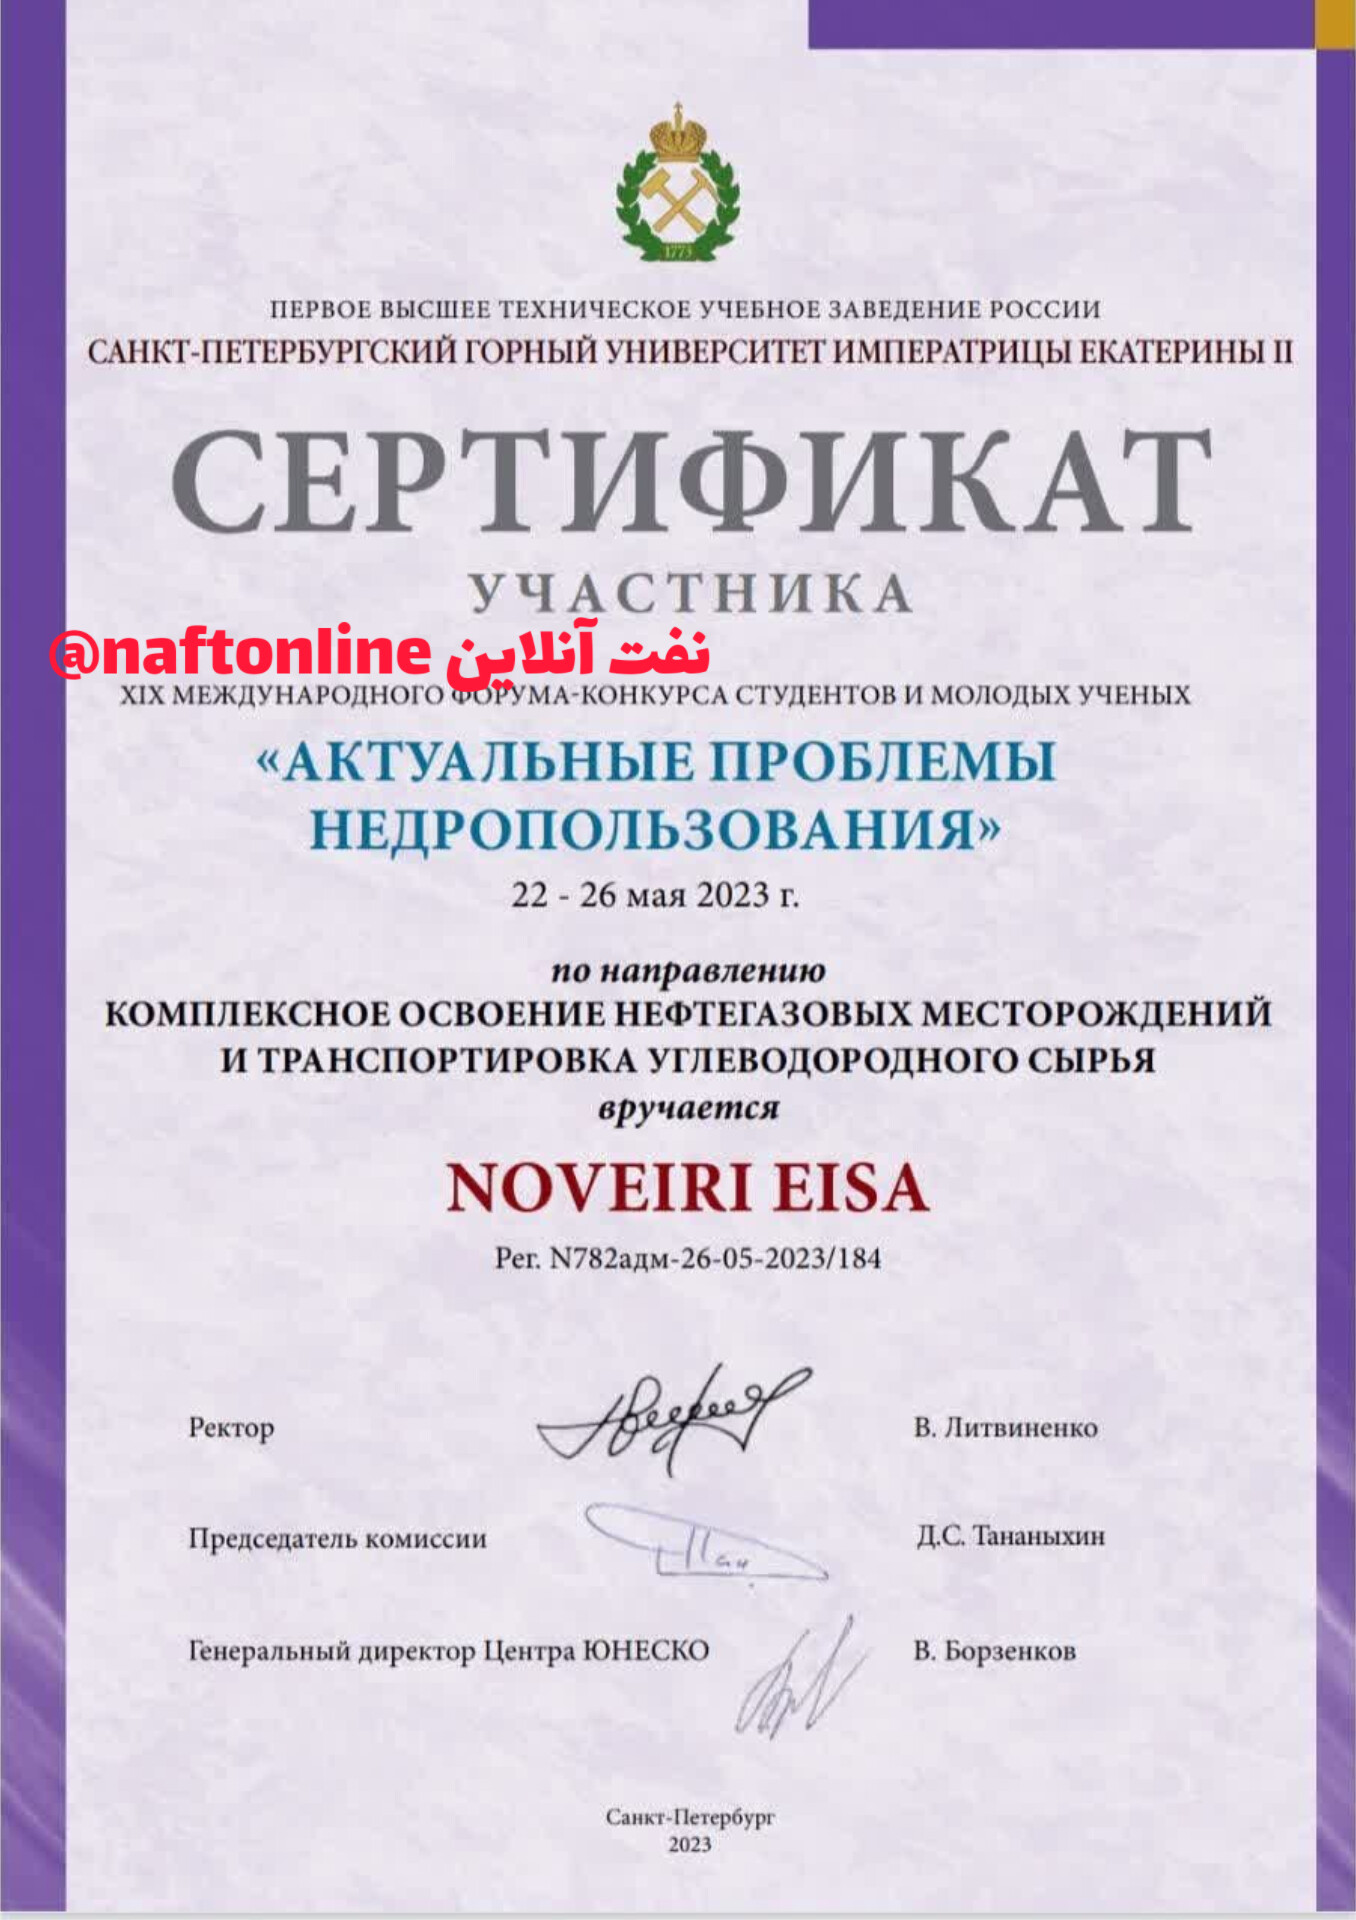 دکتر عیسی نویری دیپلم افتخار جشنواره بین المللی دانشمندان جوان در روسیه